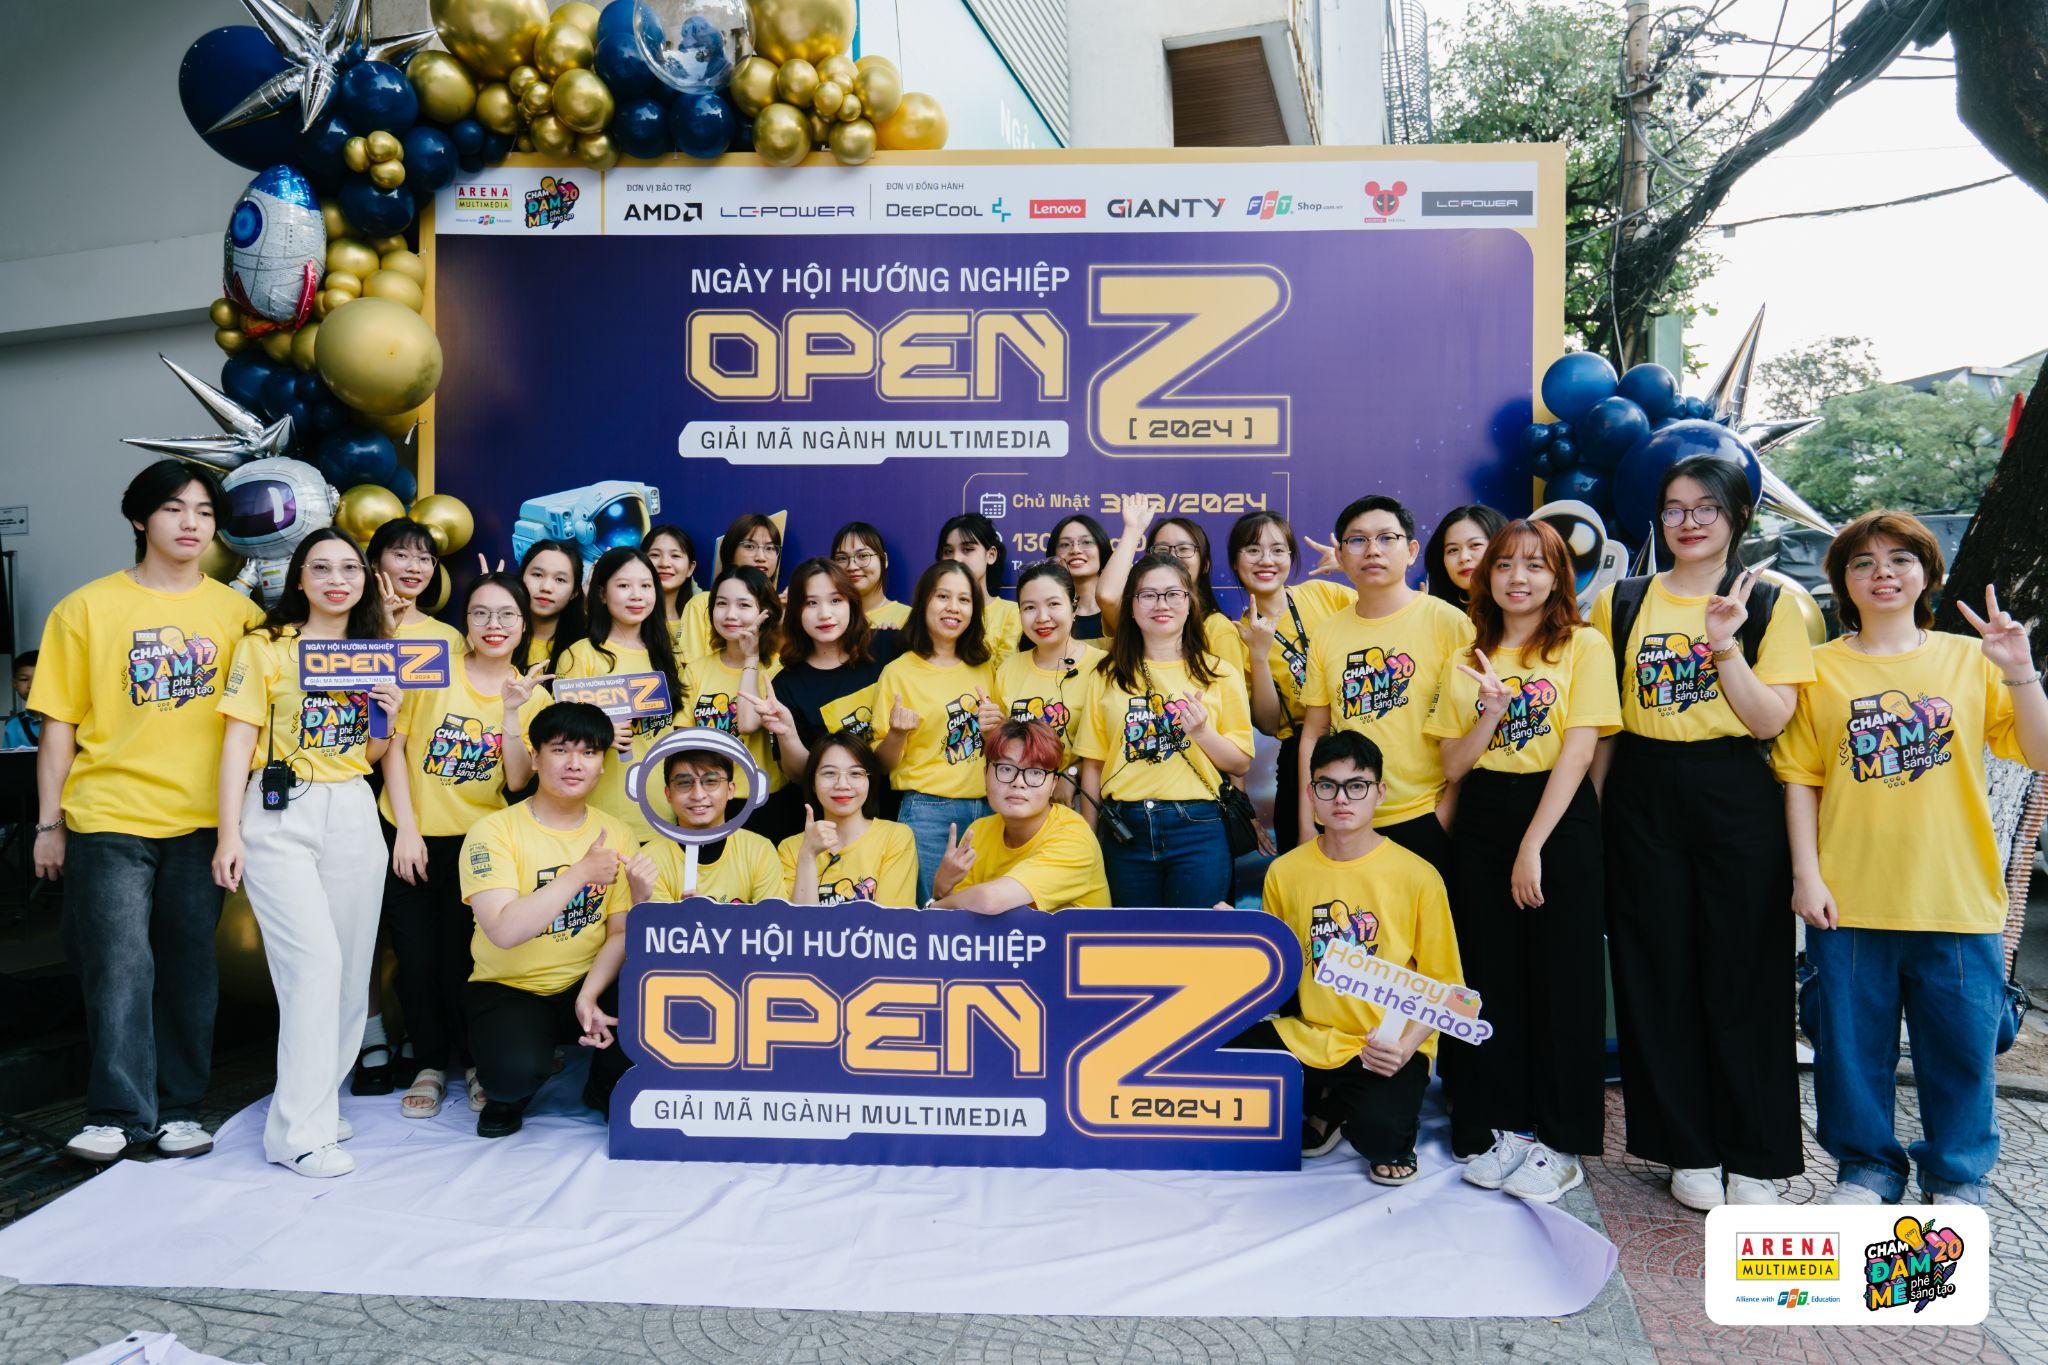 Open Z 2024 - Ngày hội hướng nghiệp ngành Multimedia tại Đà Nẵng.